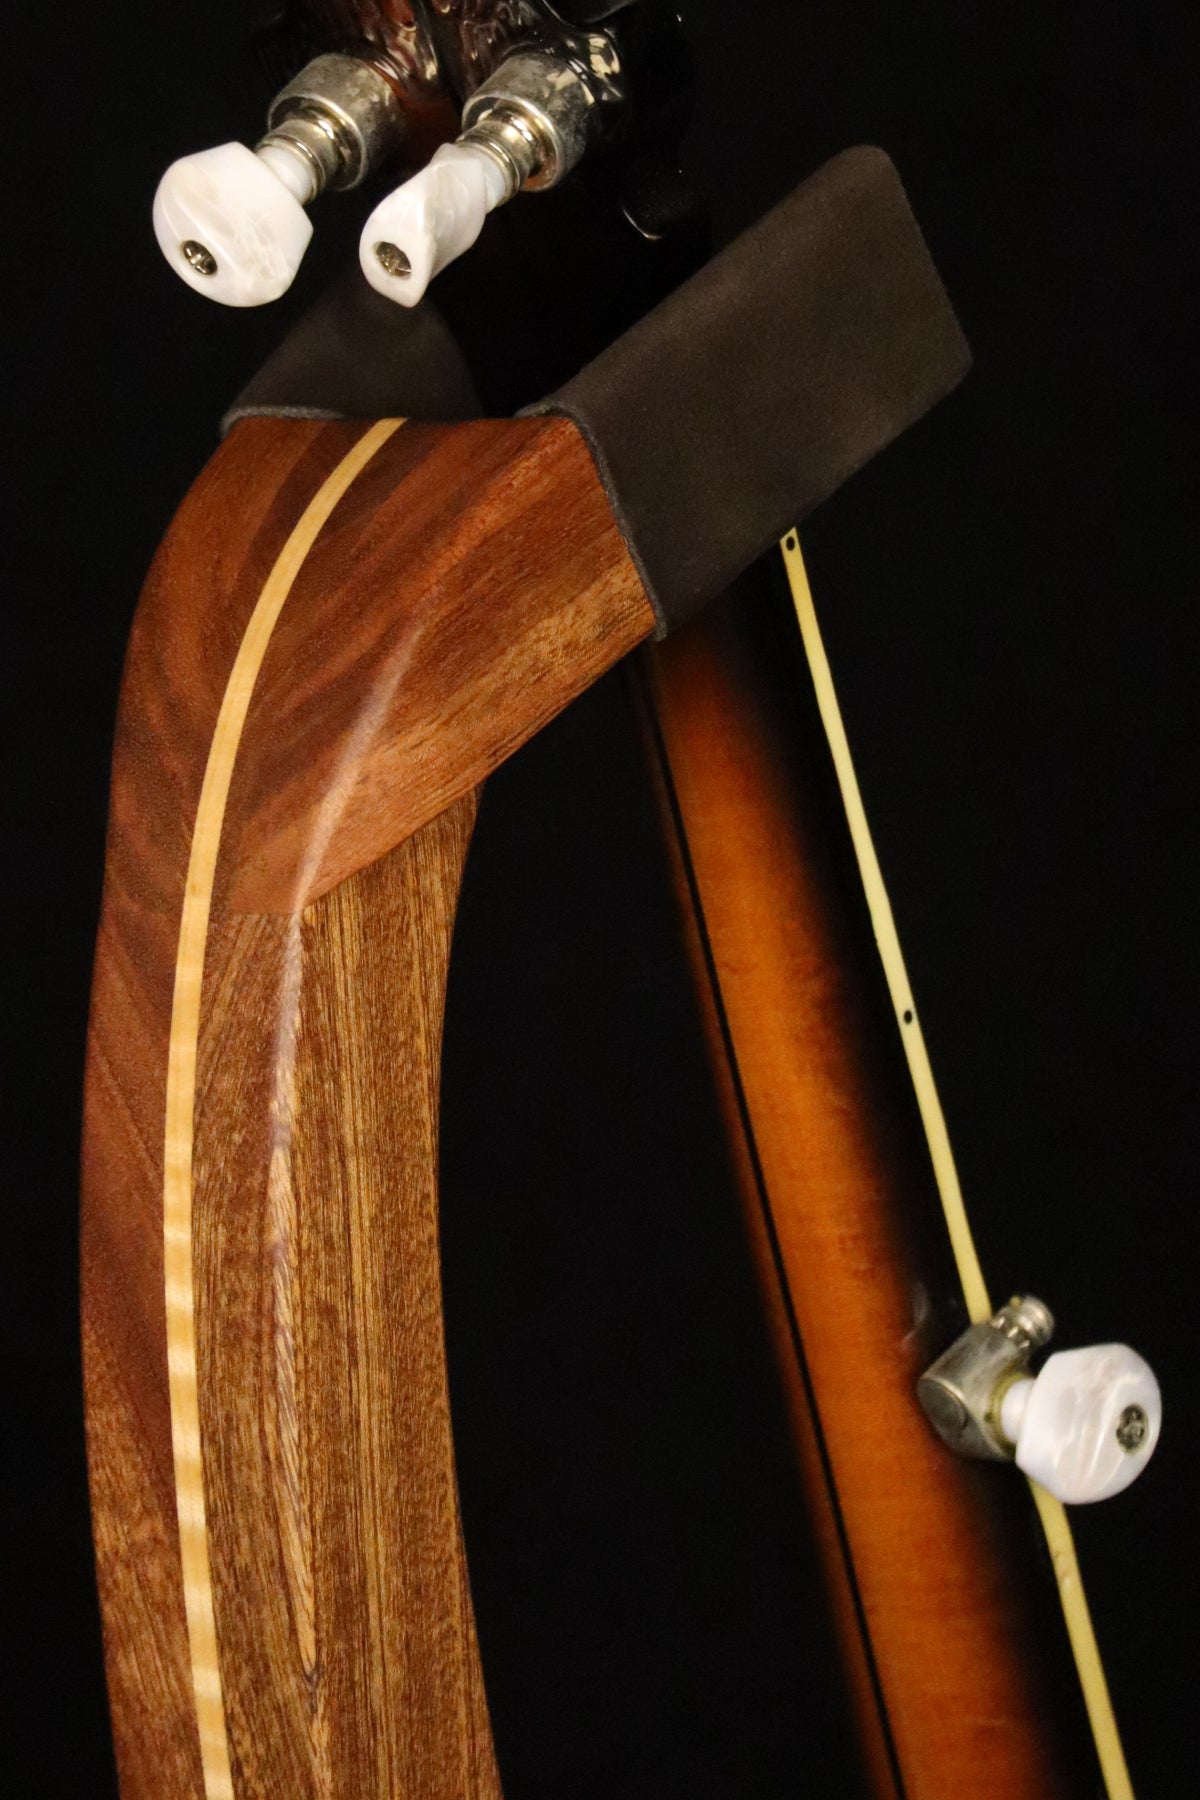 Folding sapele mahogany and curly maple wood banjo floor stand yoke detail image with Alvarez banjo